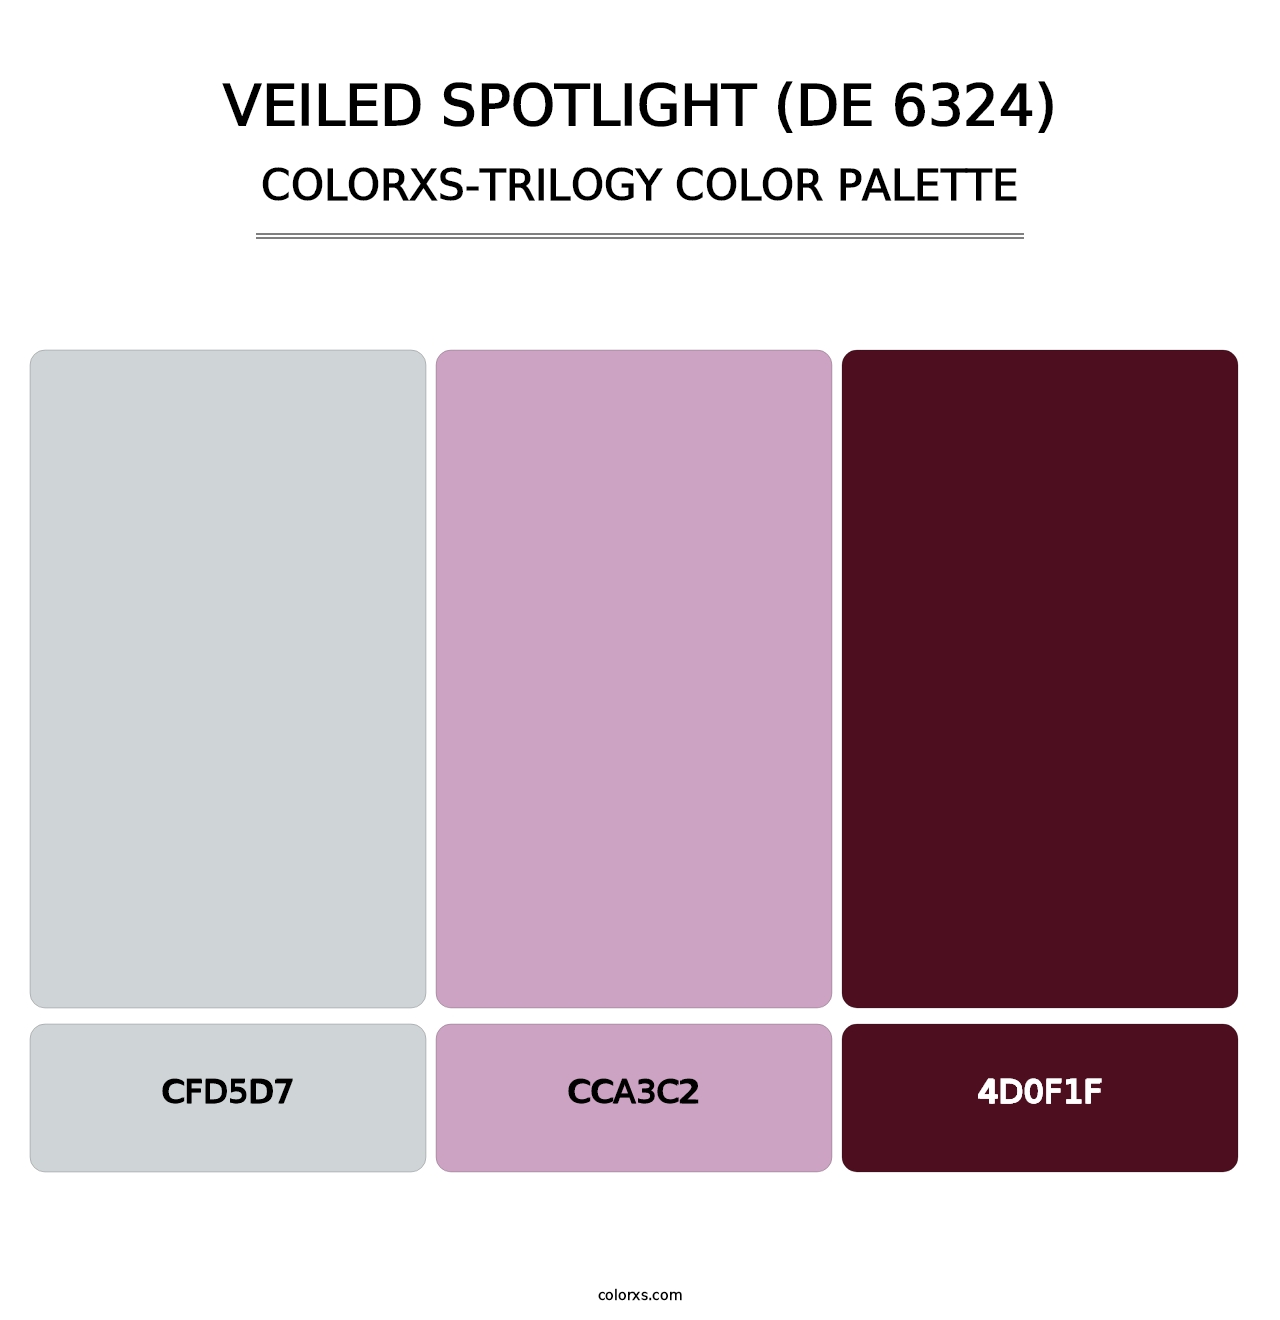 Veiled Spotlight (DE 6324) - Colorxs Trilogy Palette